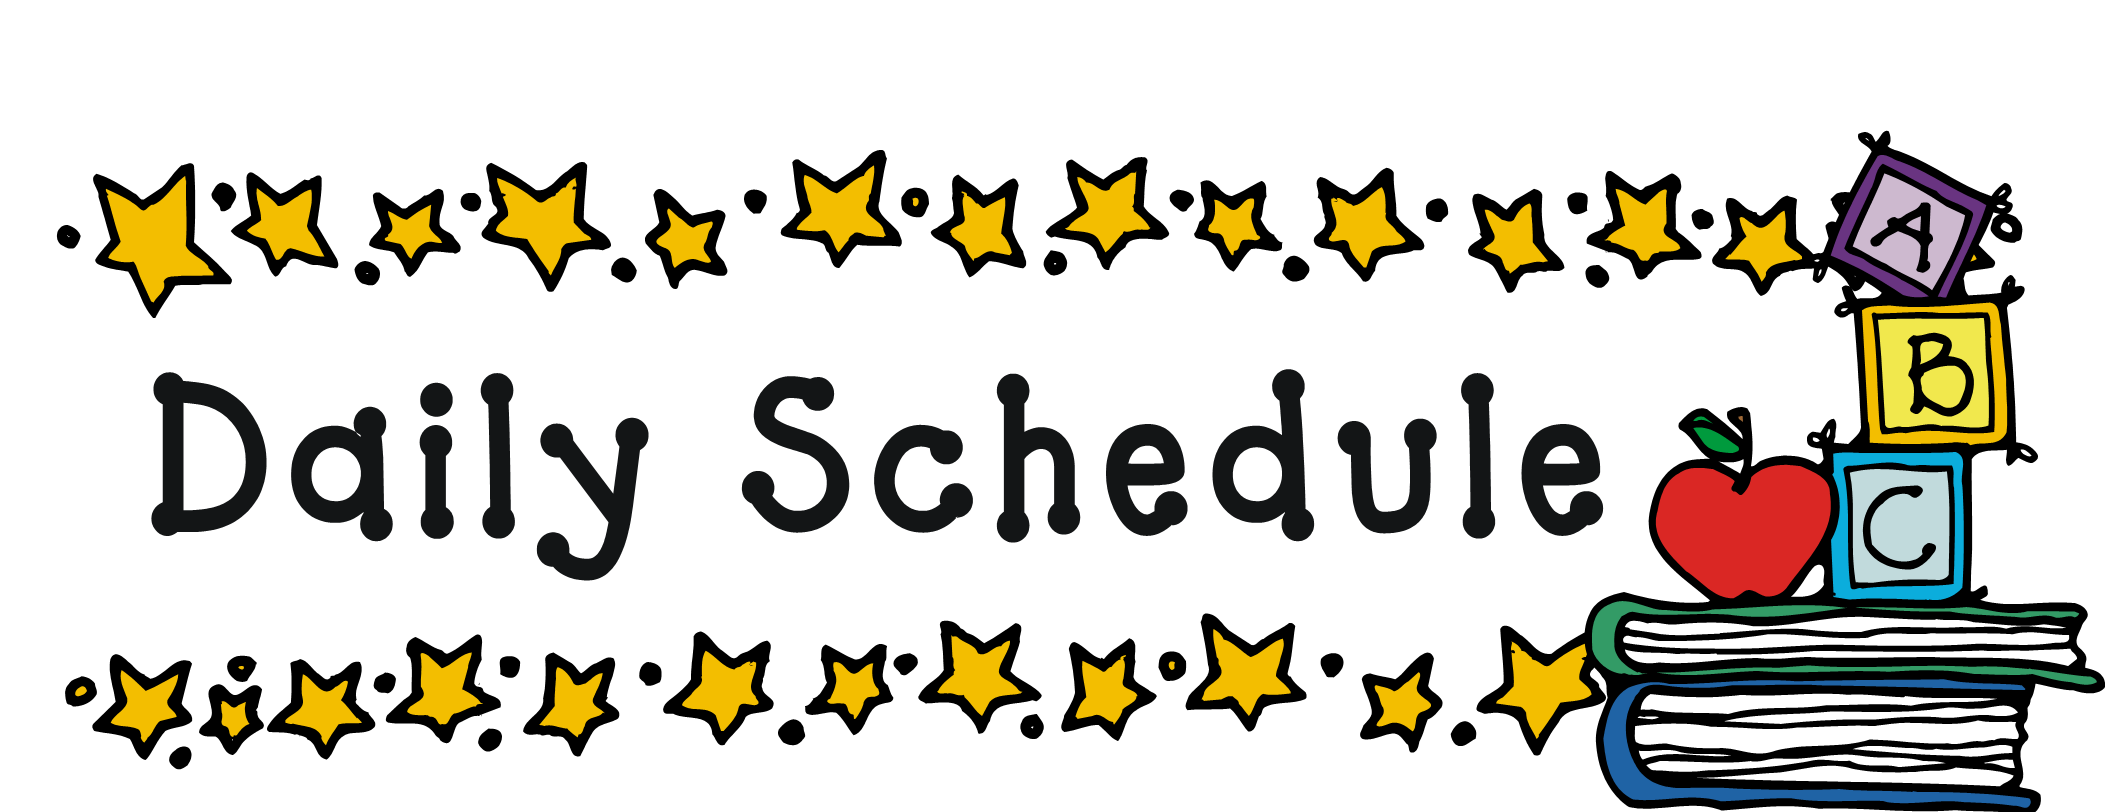 Schedule clipart school special. Bridgeport elementary class schedules